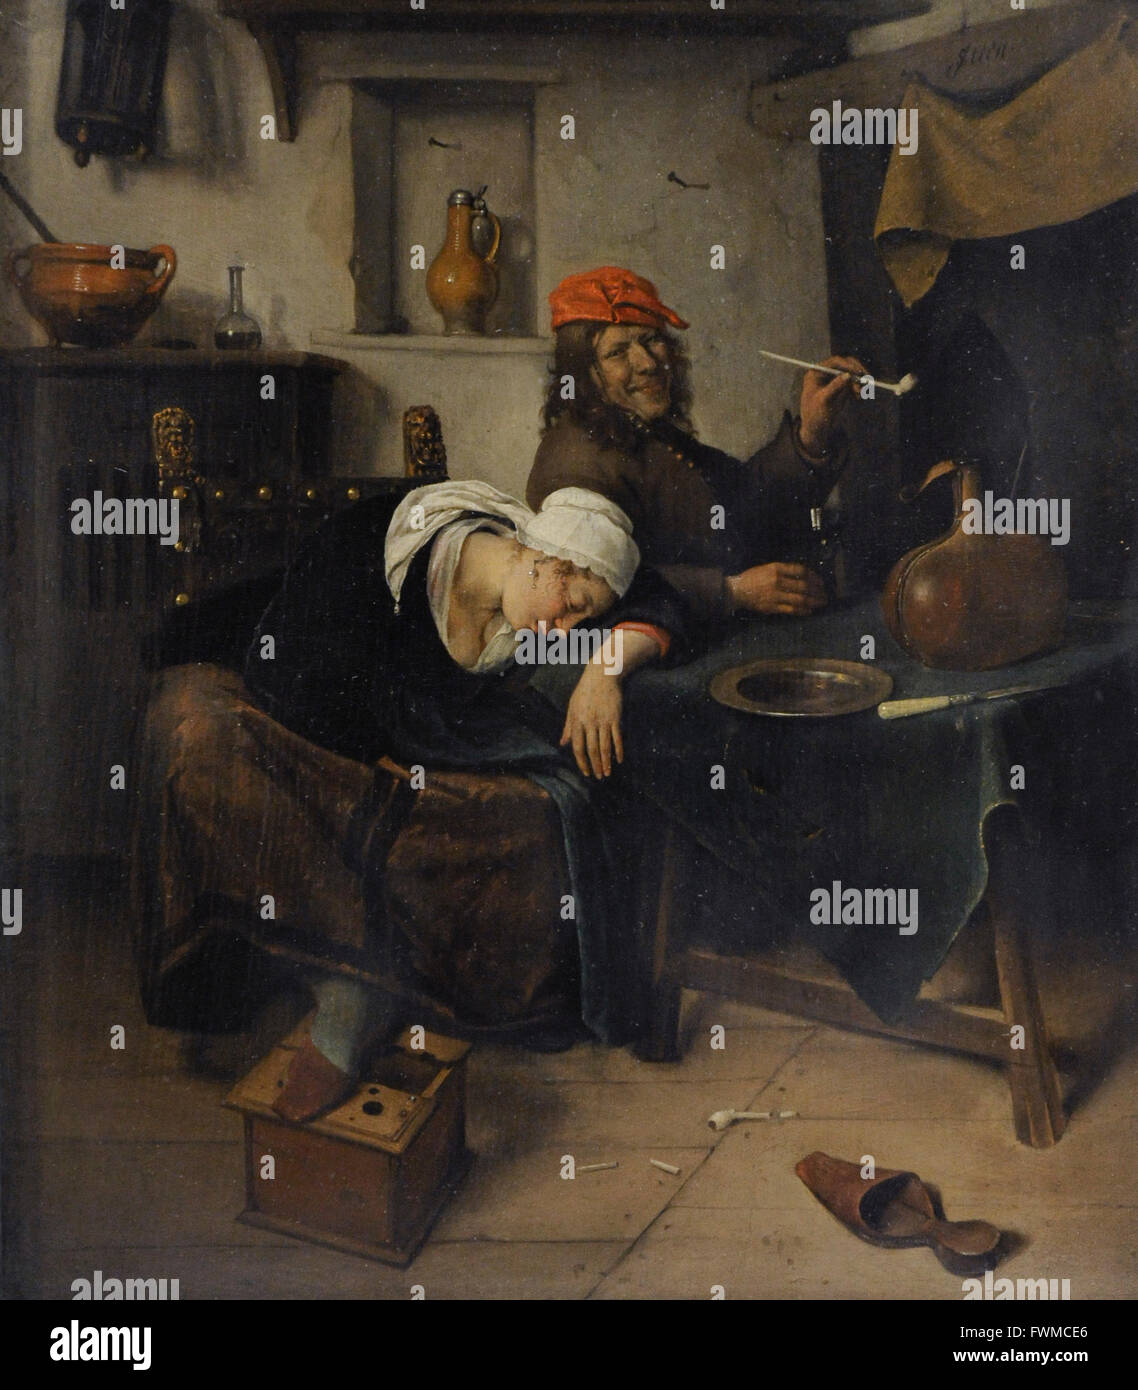 Jan Havickszoon Steen (1626-1679). Niederländischer Maler. Die Feiernden, 1660. Die Eremitage. Sankt Petersburg. Russland. Stockfoto